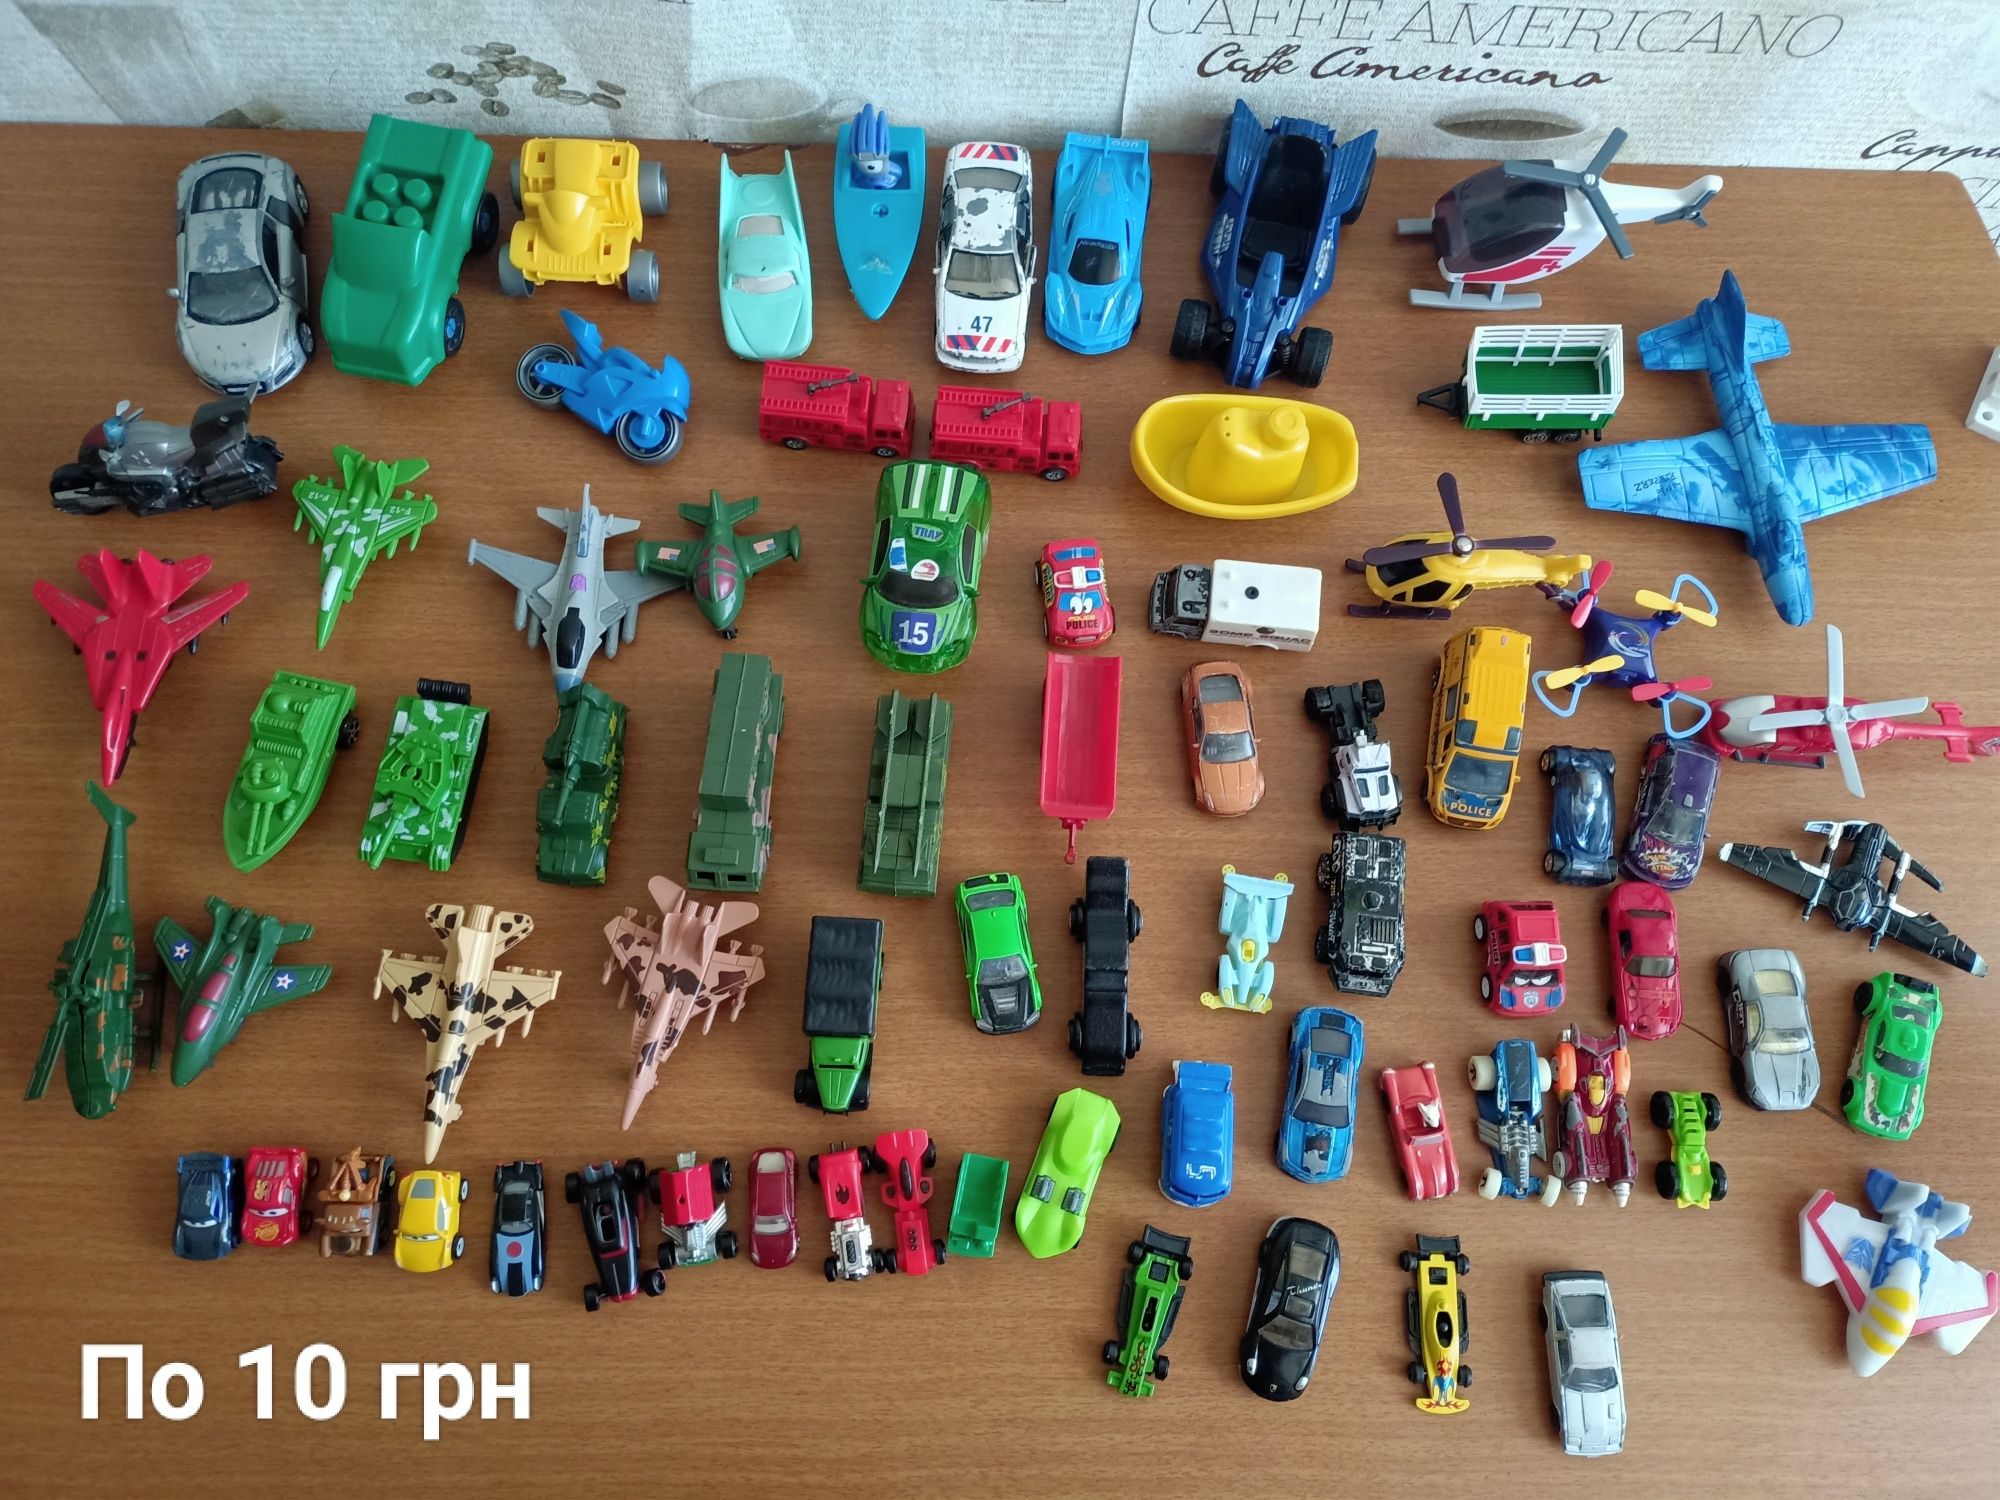 Іграшки машинки модельки літаки поїзд